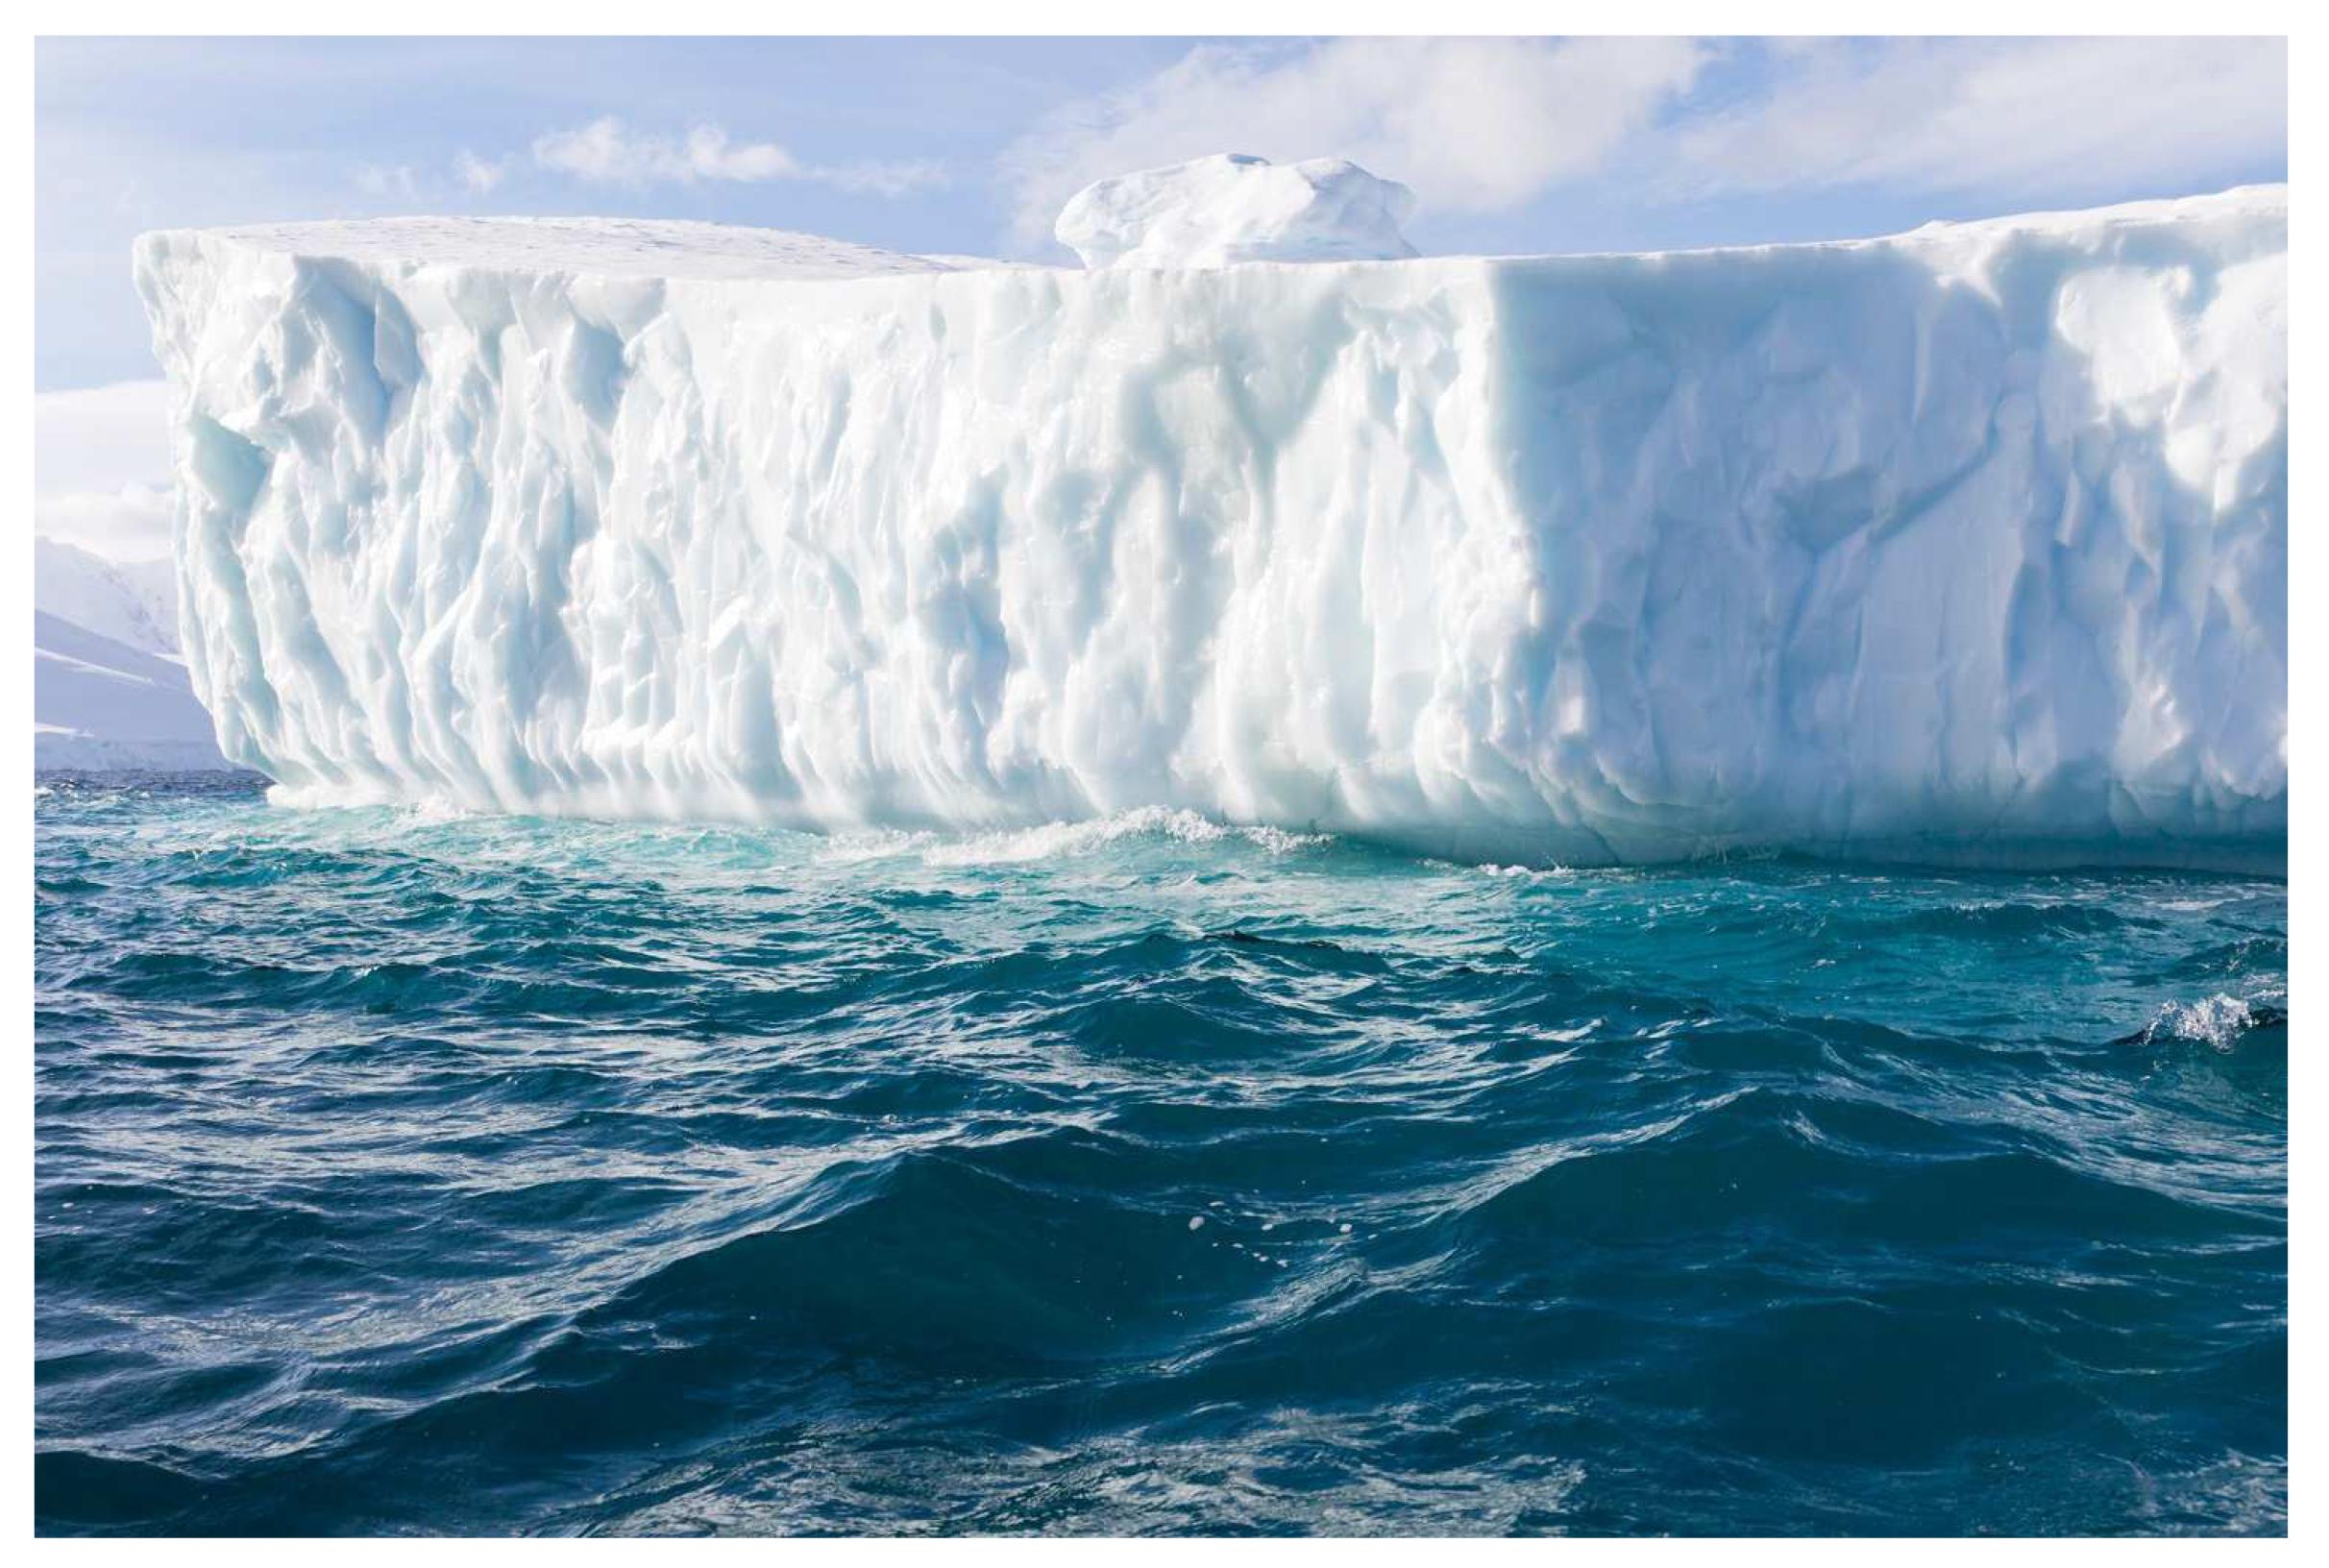 Bonnie Lautenberg Landscape Print - Fragile Elements 9, Antarctic icebergs landscape photograph 